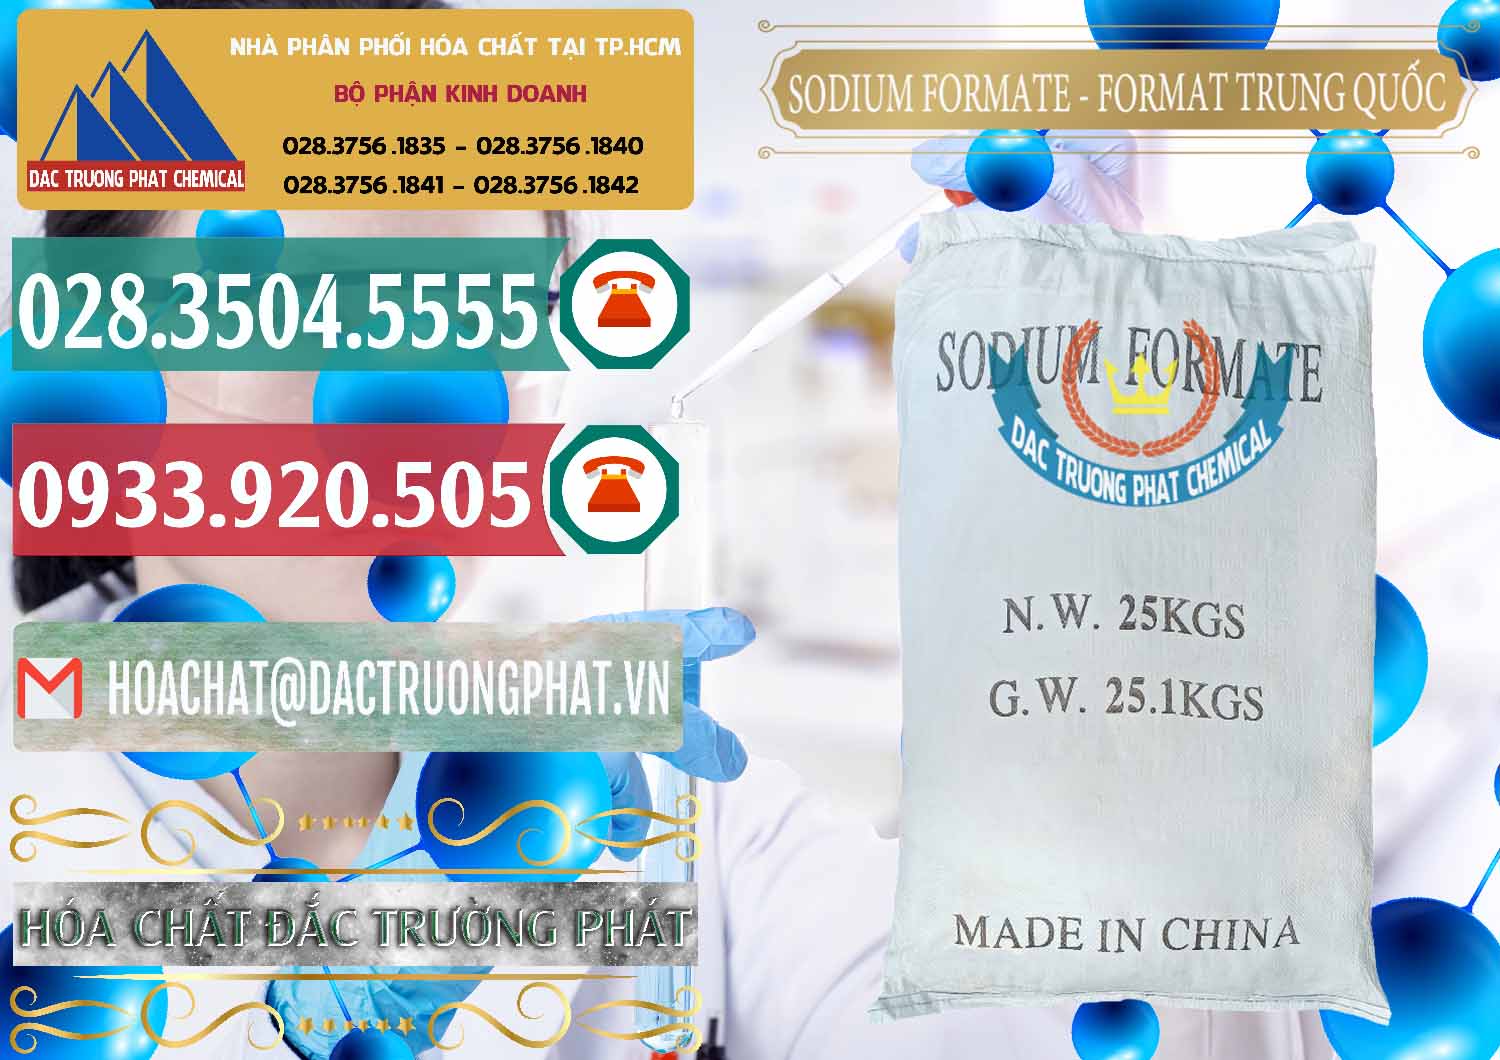 Đơn vị chuyên bán ( phân phối ) Sodium Formate - Natri Format Trung Quốc China - 0142 - Chuyên phân phối & cung ứng hóa chất tại TP.HCM - muabanhoachat.vn